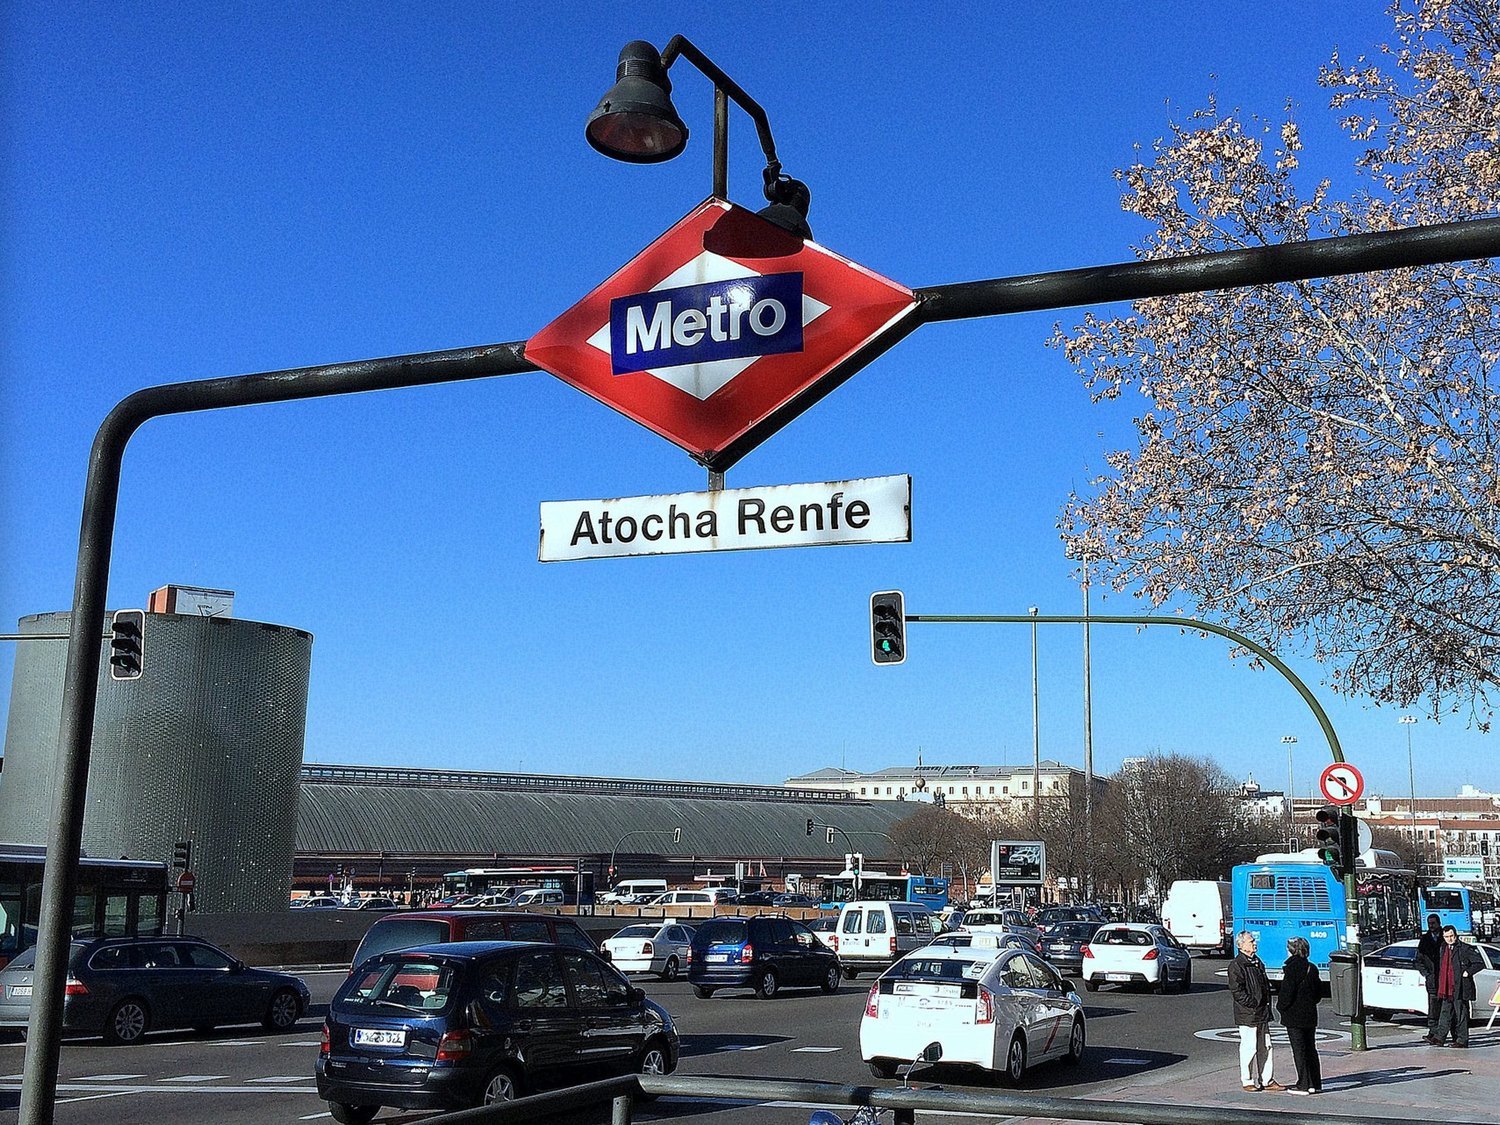 La Comunidad de Madrid anuncia este cambio de nombre a la estación de Metro de Atocha Renfe